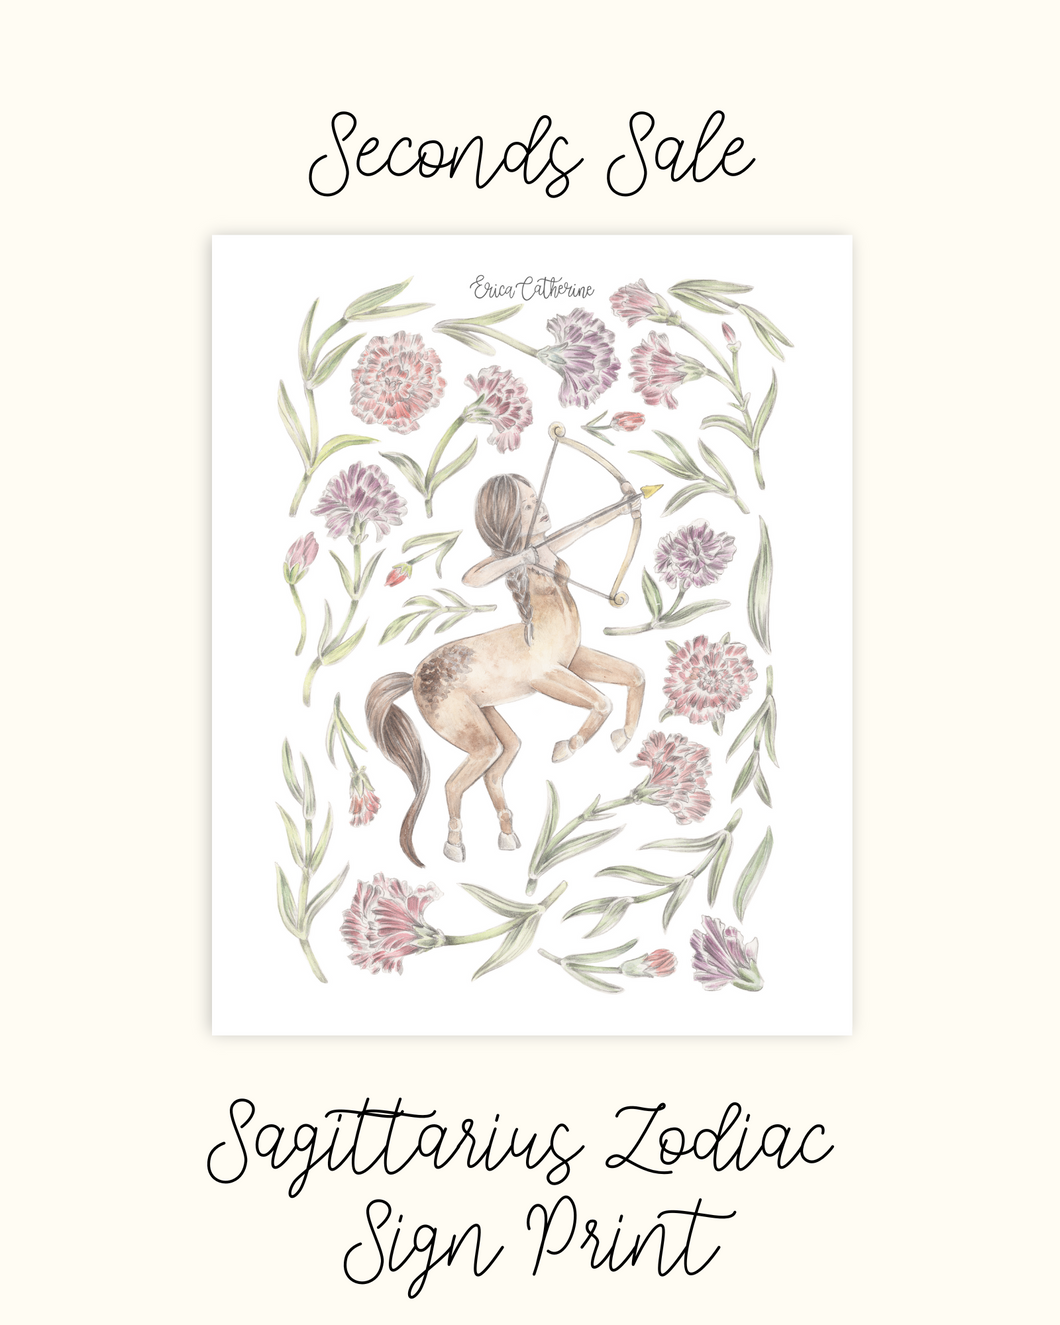 Sagittarius Zodiac Sign - Seconds Sale